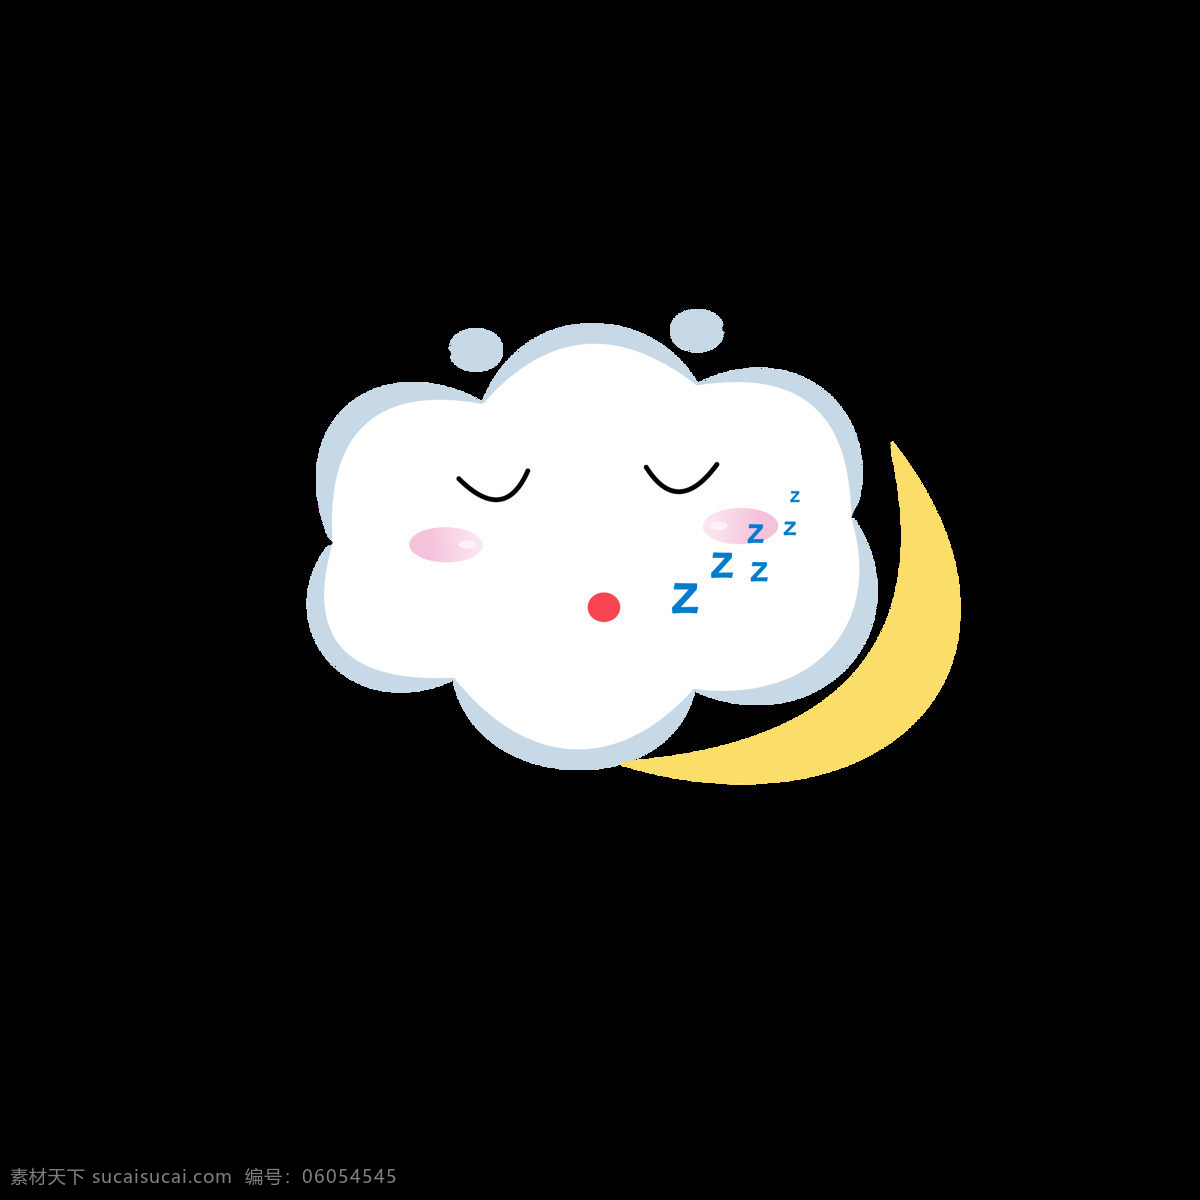 原创 白云 元素 卡通 可爱 天气 表情 包 云朵 卡通可爱 夜晚 睡觉 元素设计 表情包